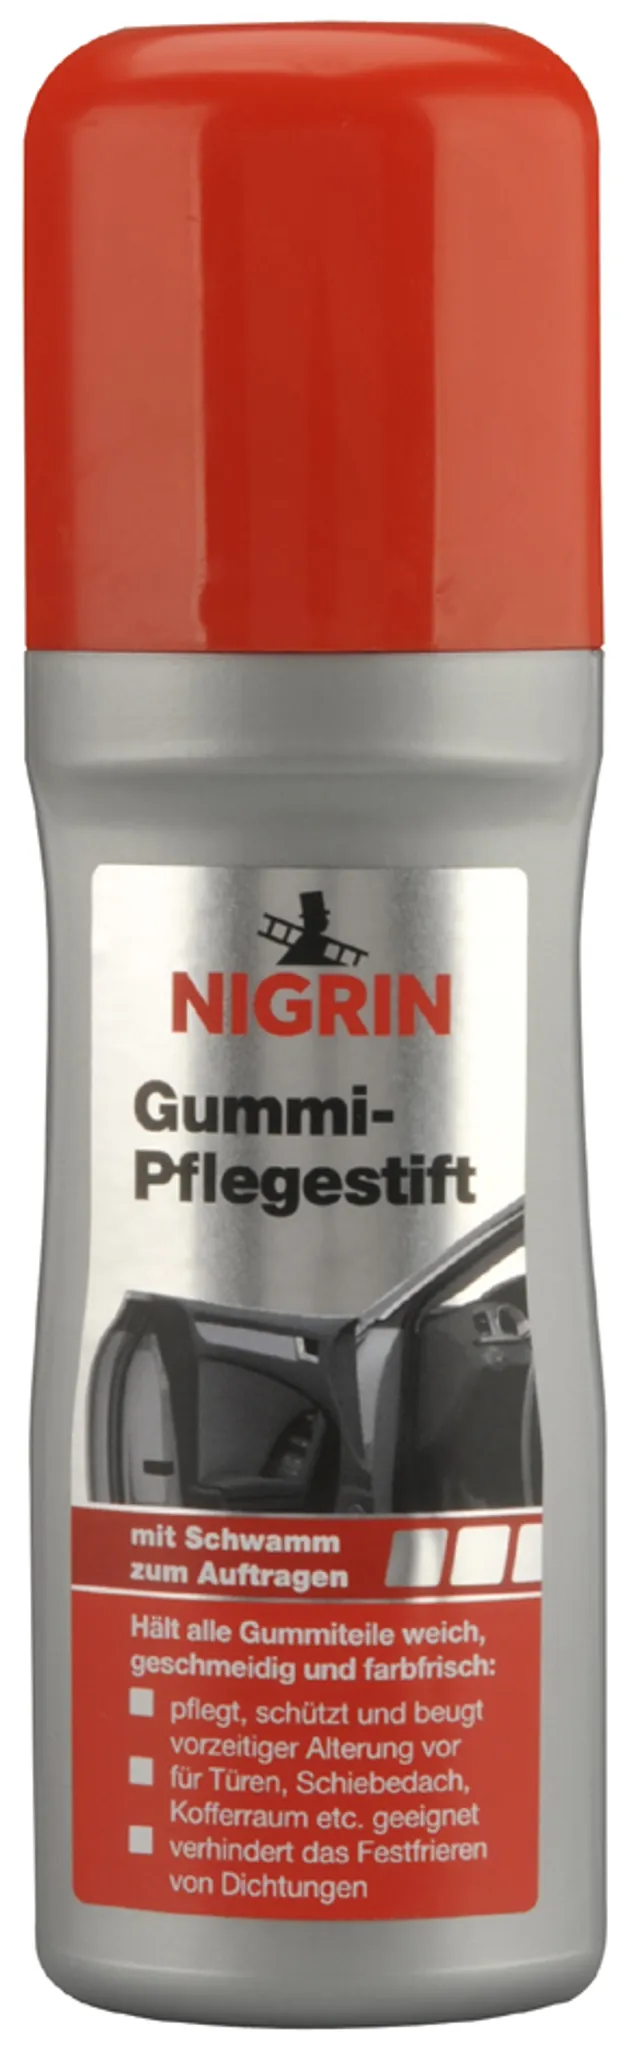 Nigrin Gummipflege 97568, Gummi-Pflegestift, fürs Auto, pflegt und schützt,  75 ml – Böttcher AG